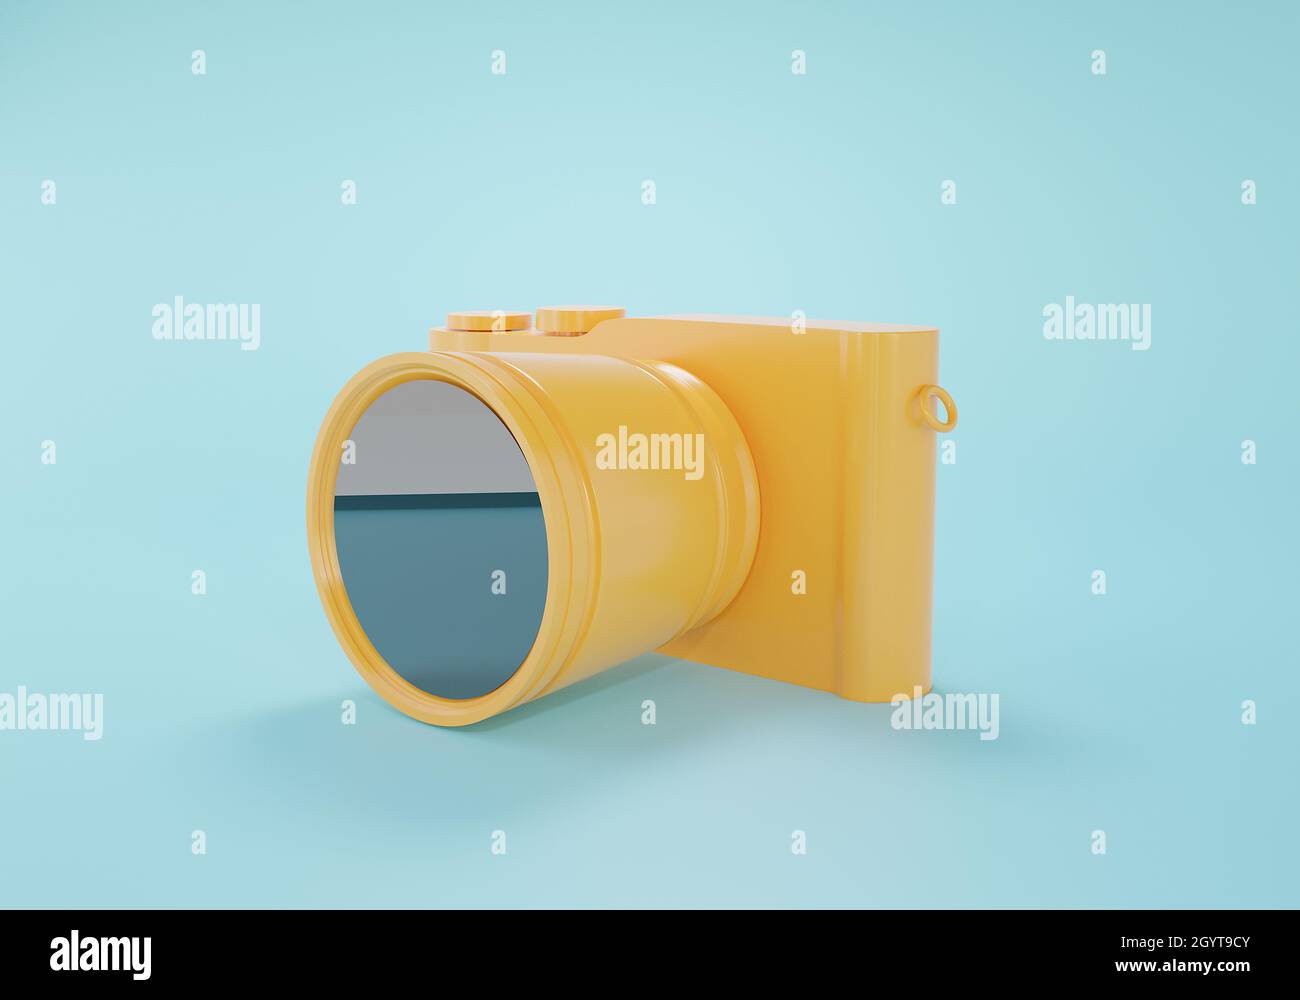 Spiegellose 3D-Darstellung der Kamera. Digitale gelbe Fotokamera auf blauem Hintergrund. 3D-Rendering minimal ein Konzept zum Fotografierung Stockfoto